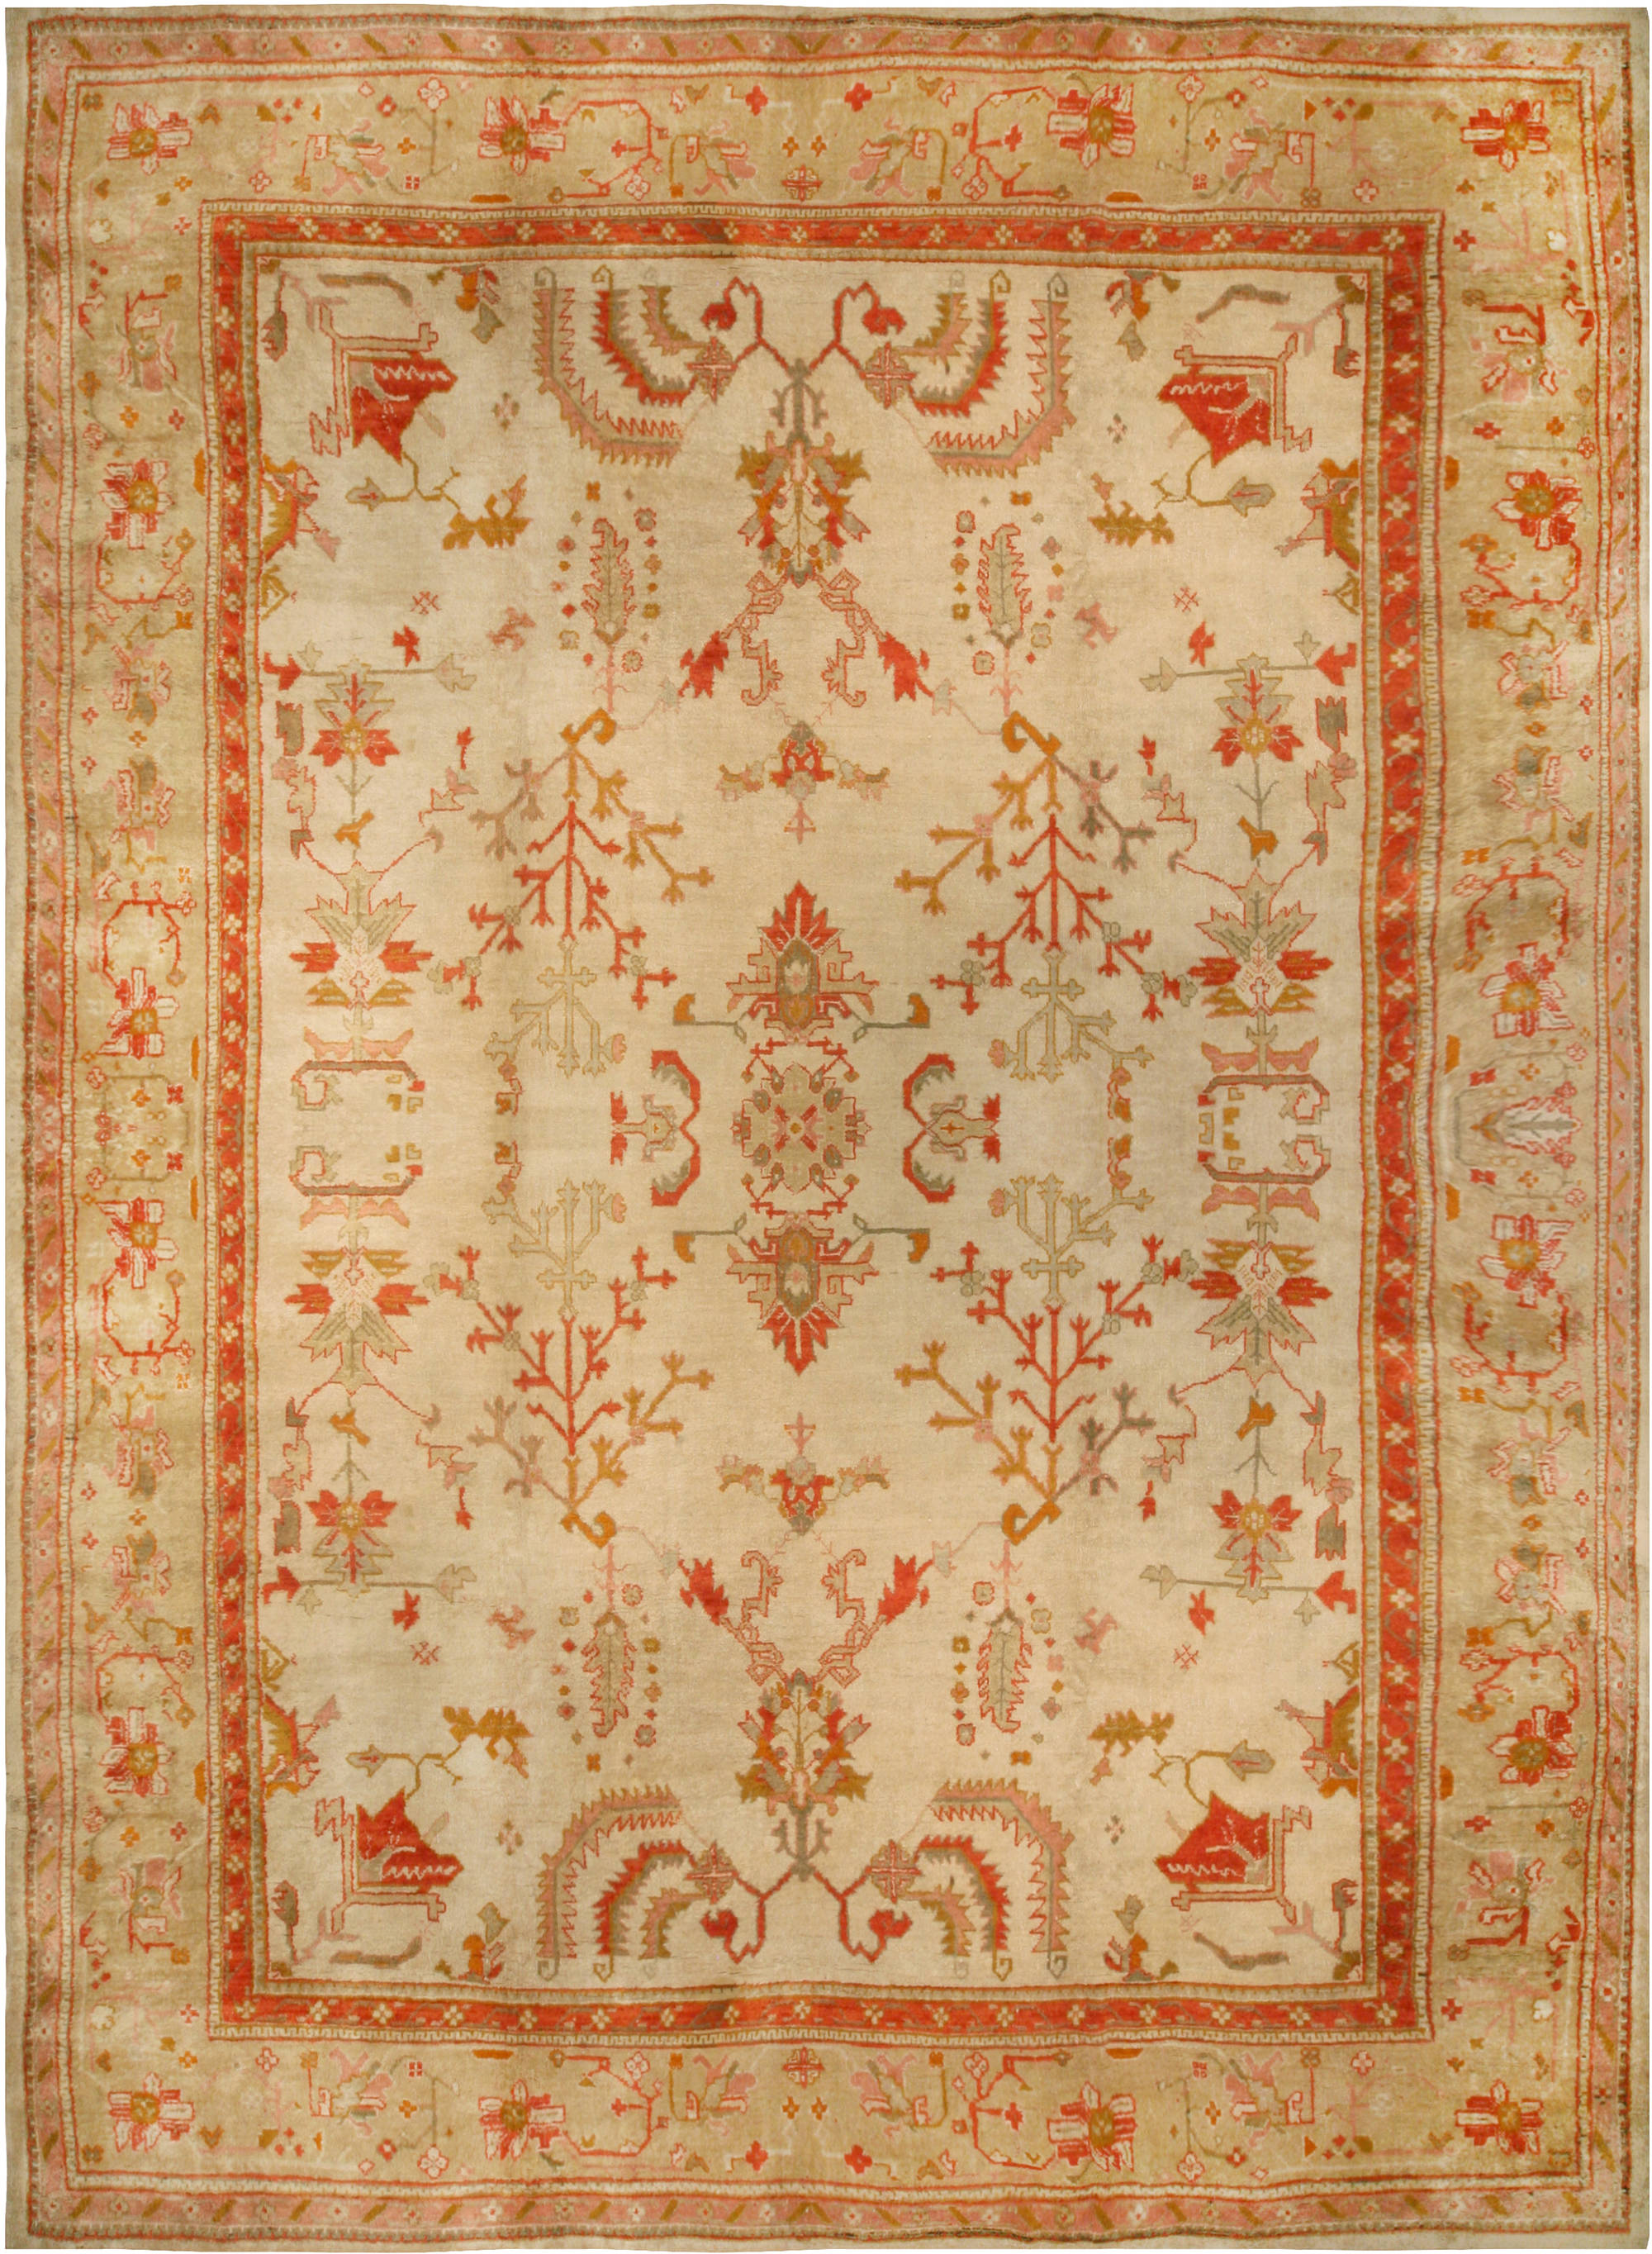 Antique Turkish Rugs Kilim Carpets, Vintage Turkish Rugs